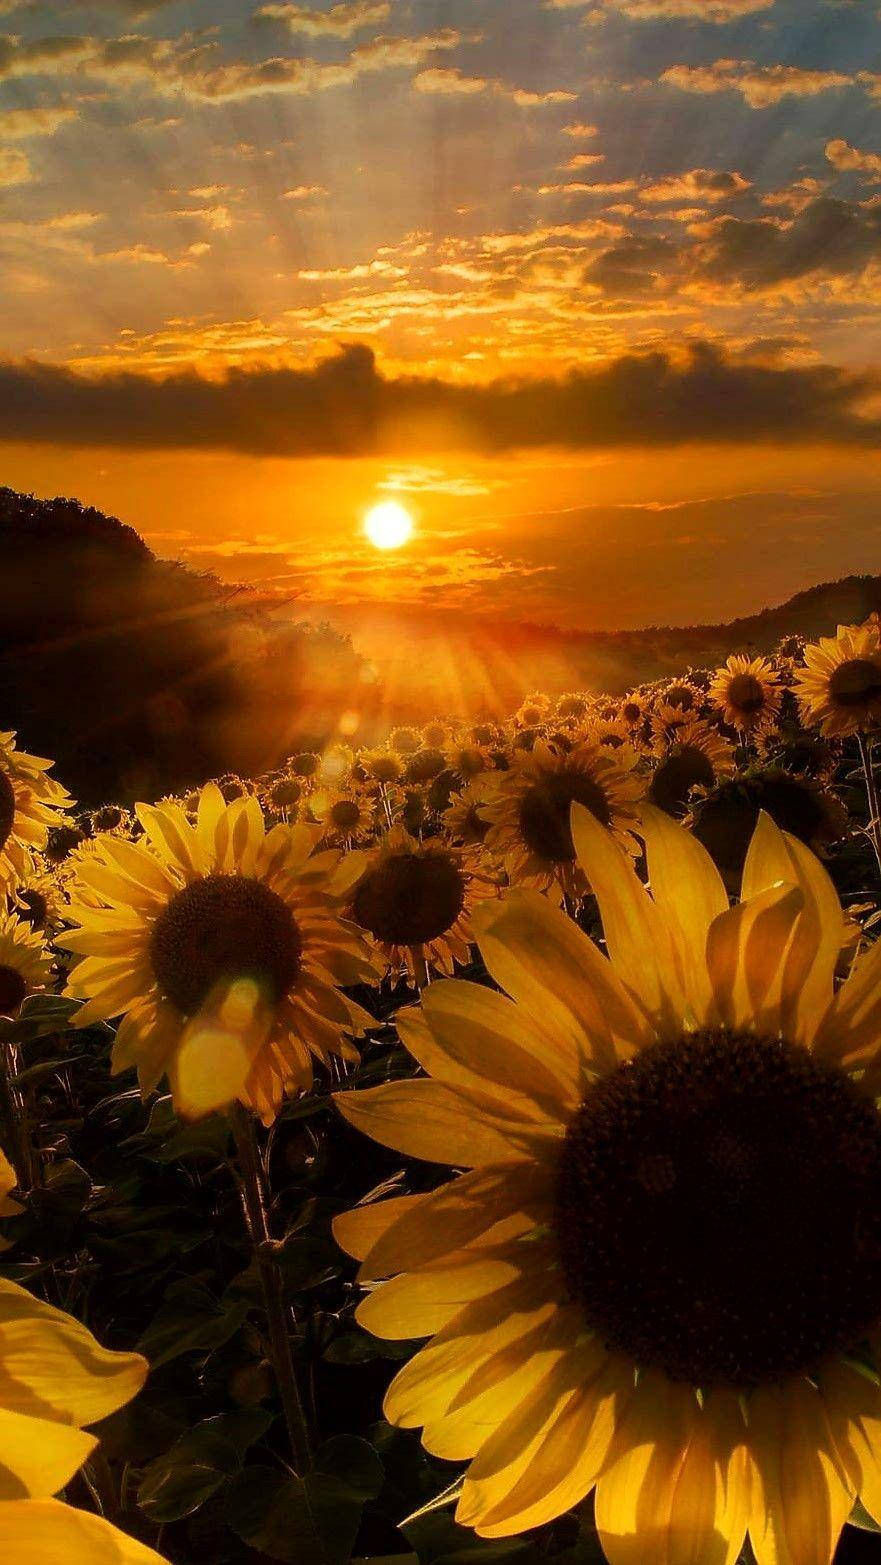 Gamber Sunflowers Under Sunset